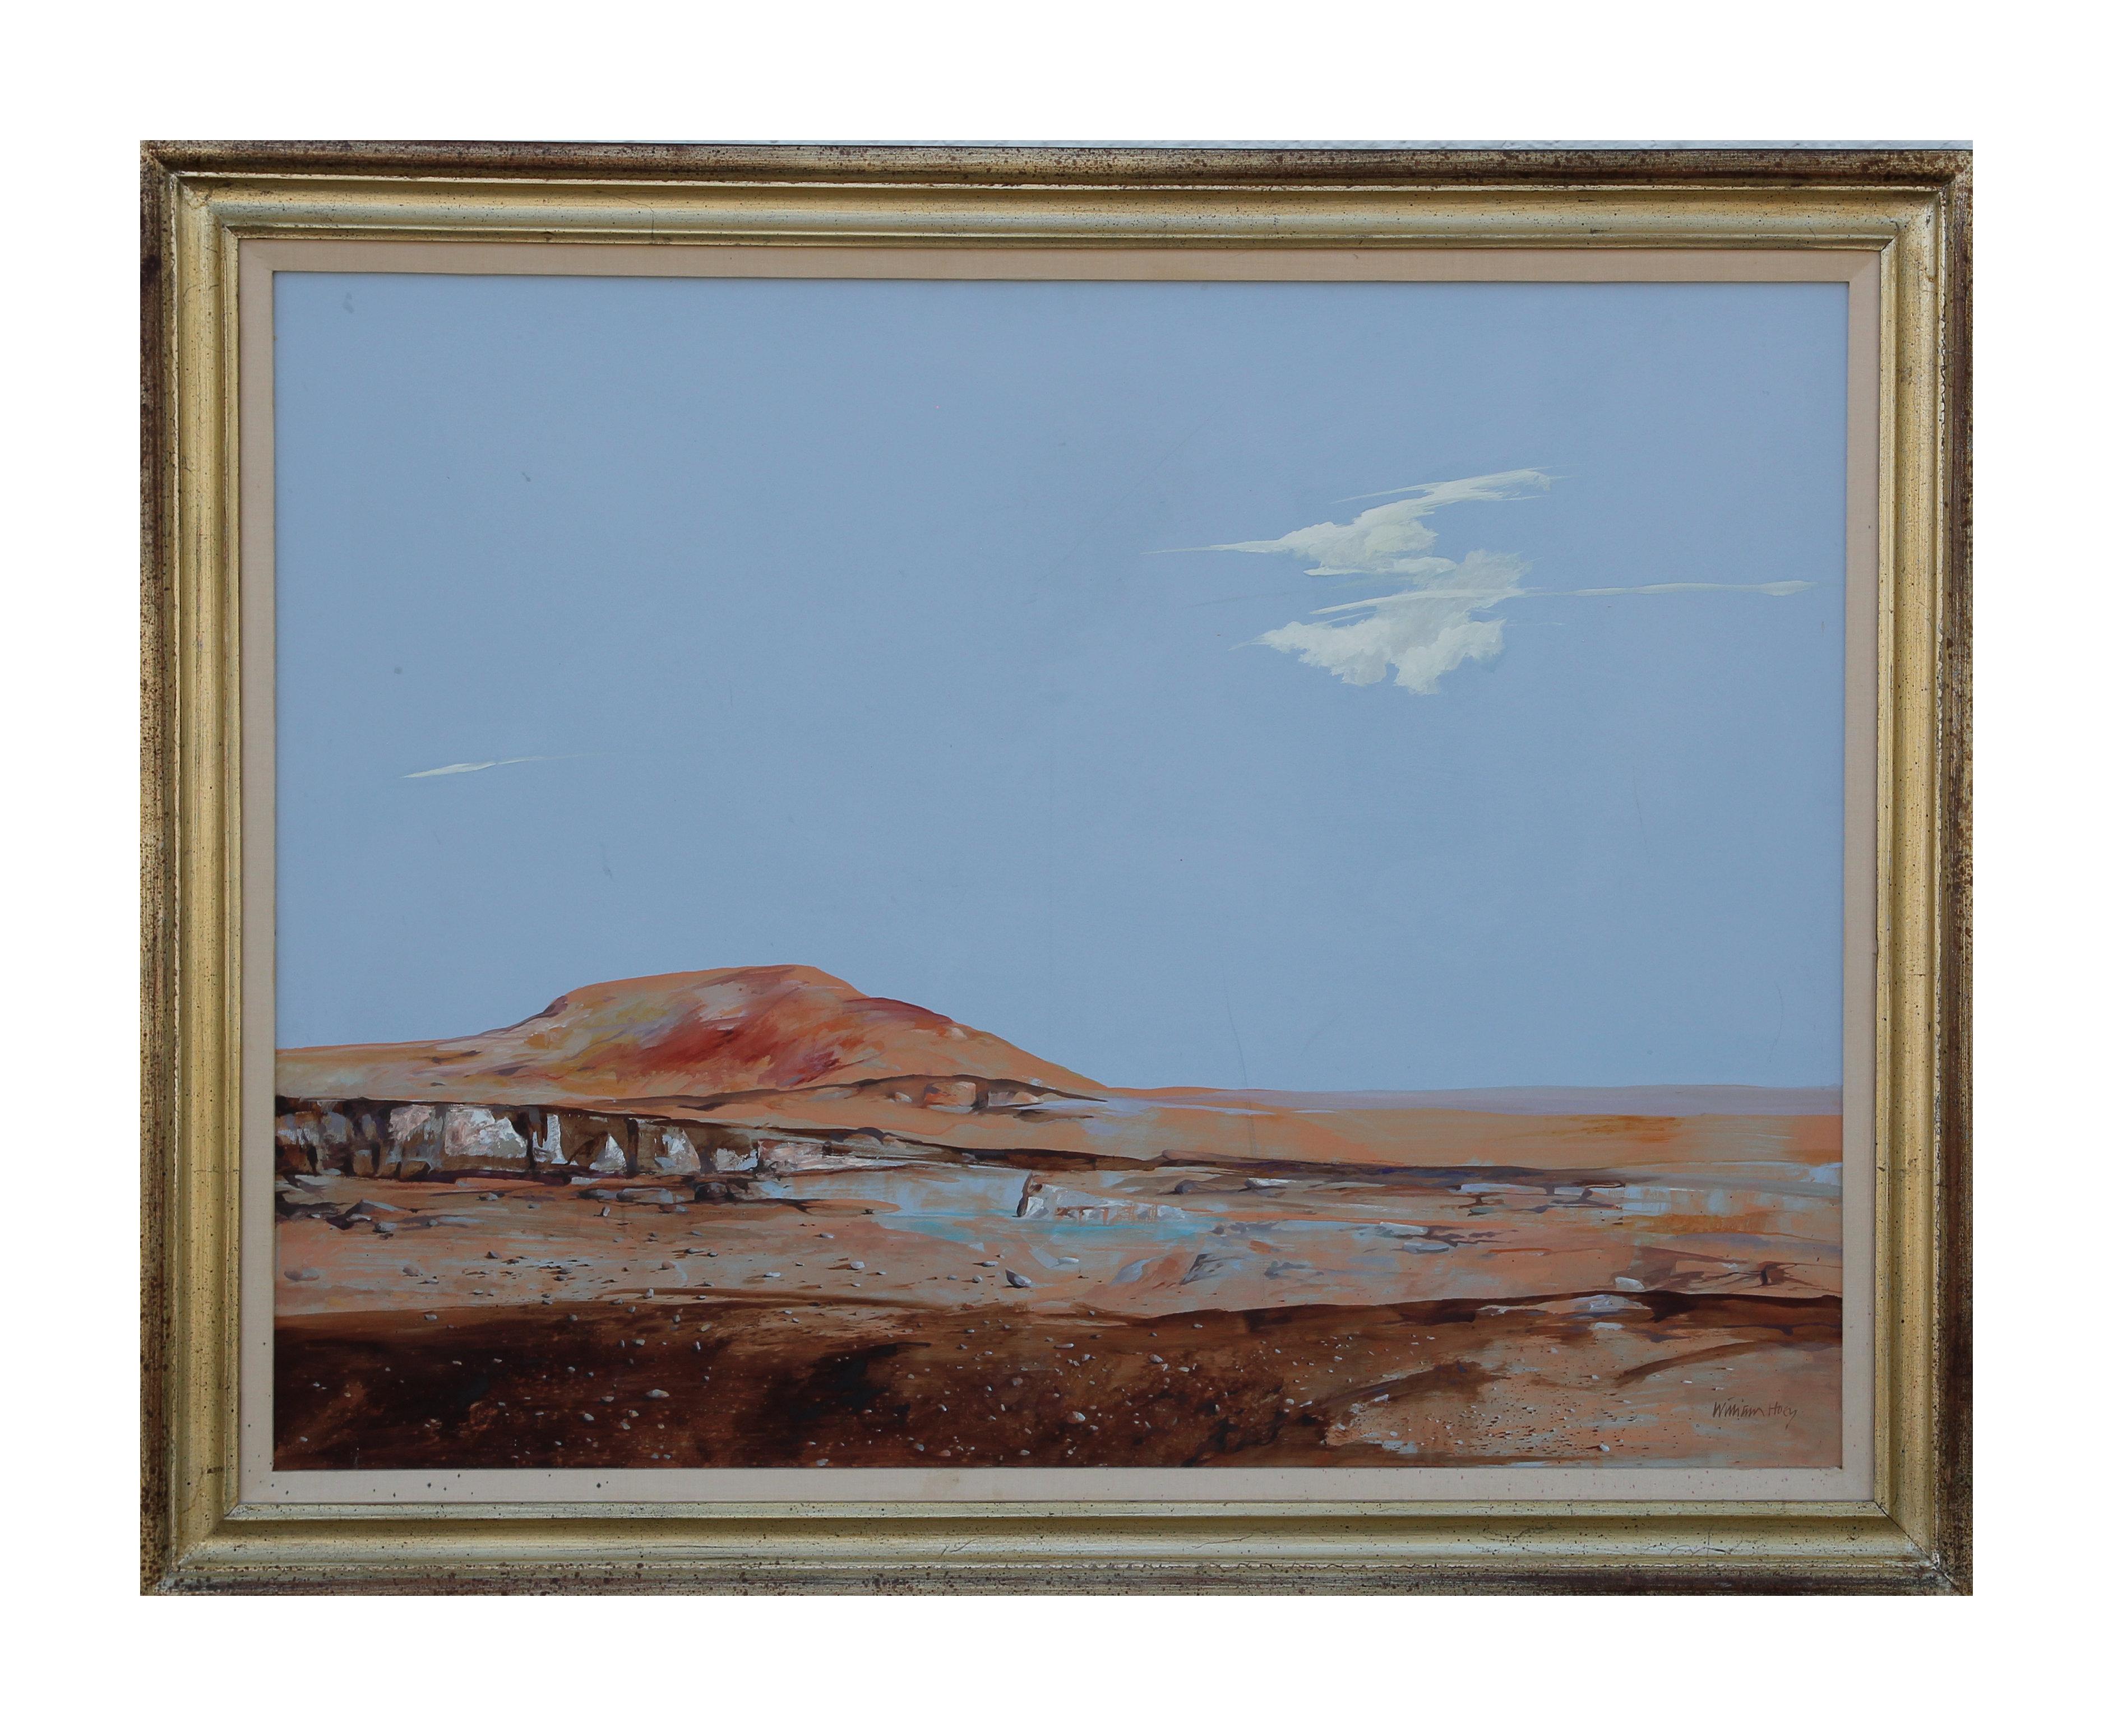 Sublime peinture naturaliste de paysage désertique